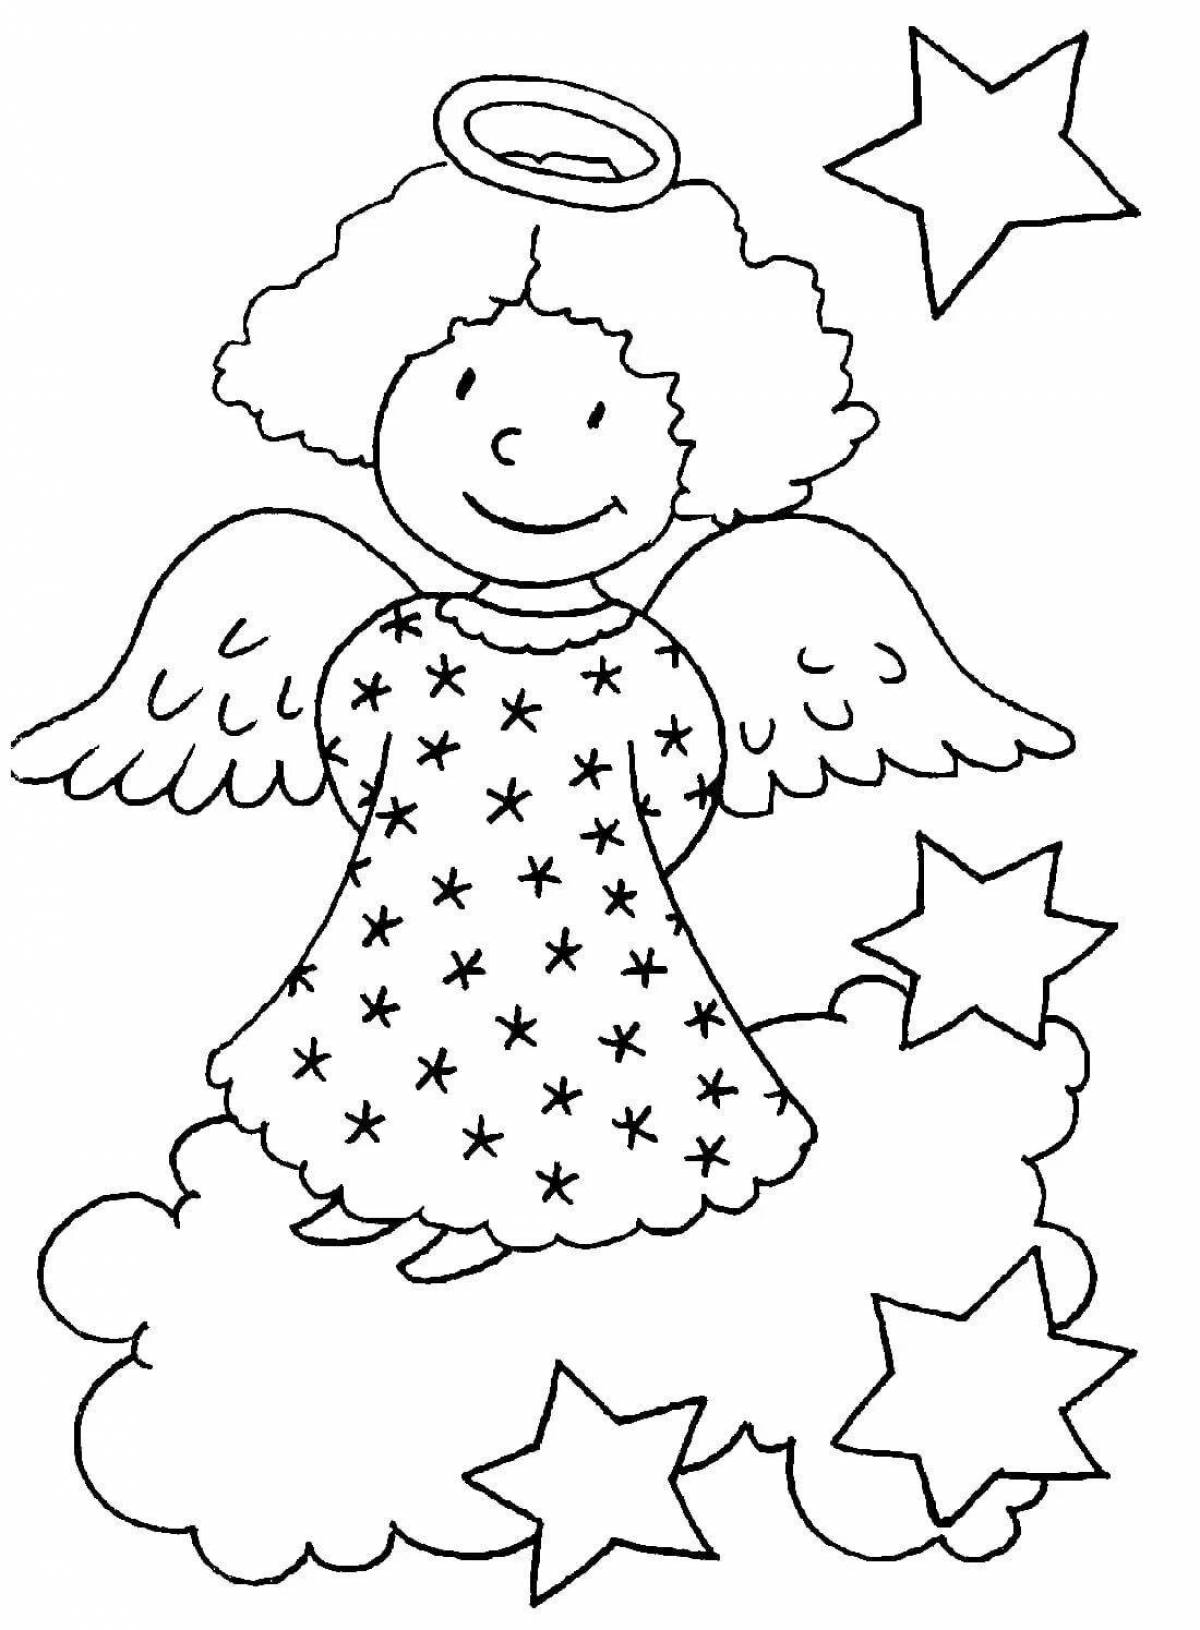 Милый ангелочек-раскраска для детей